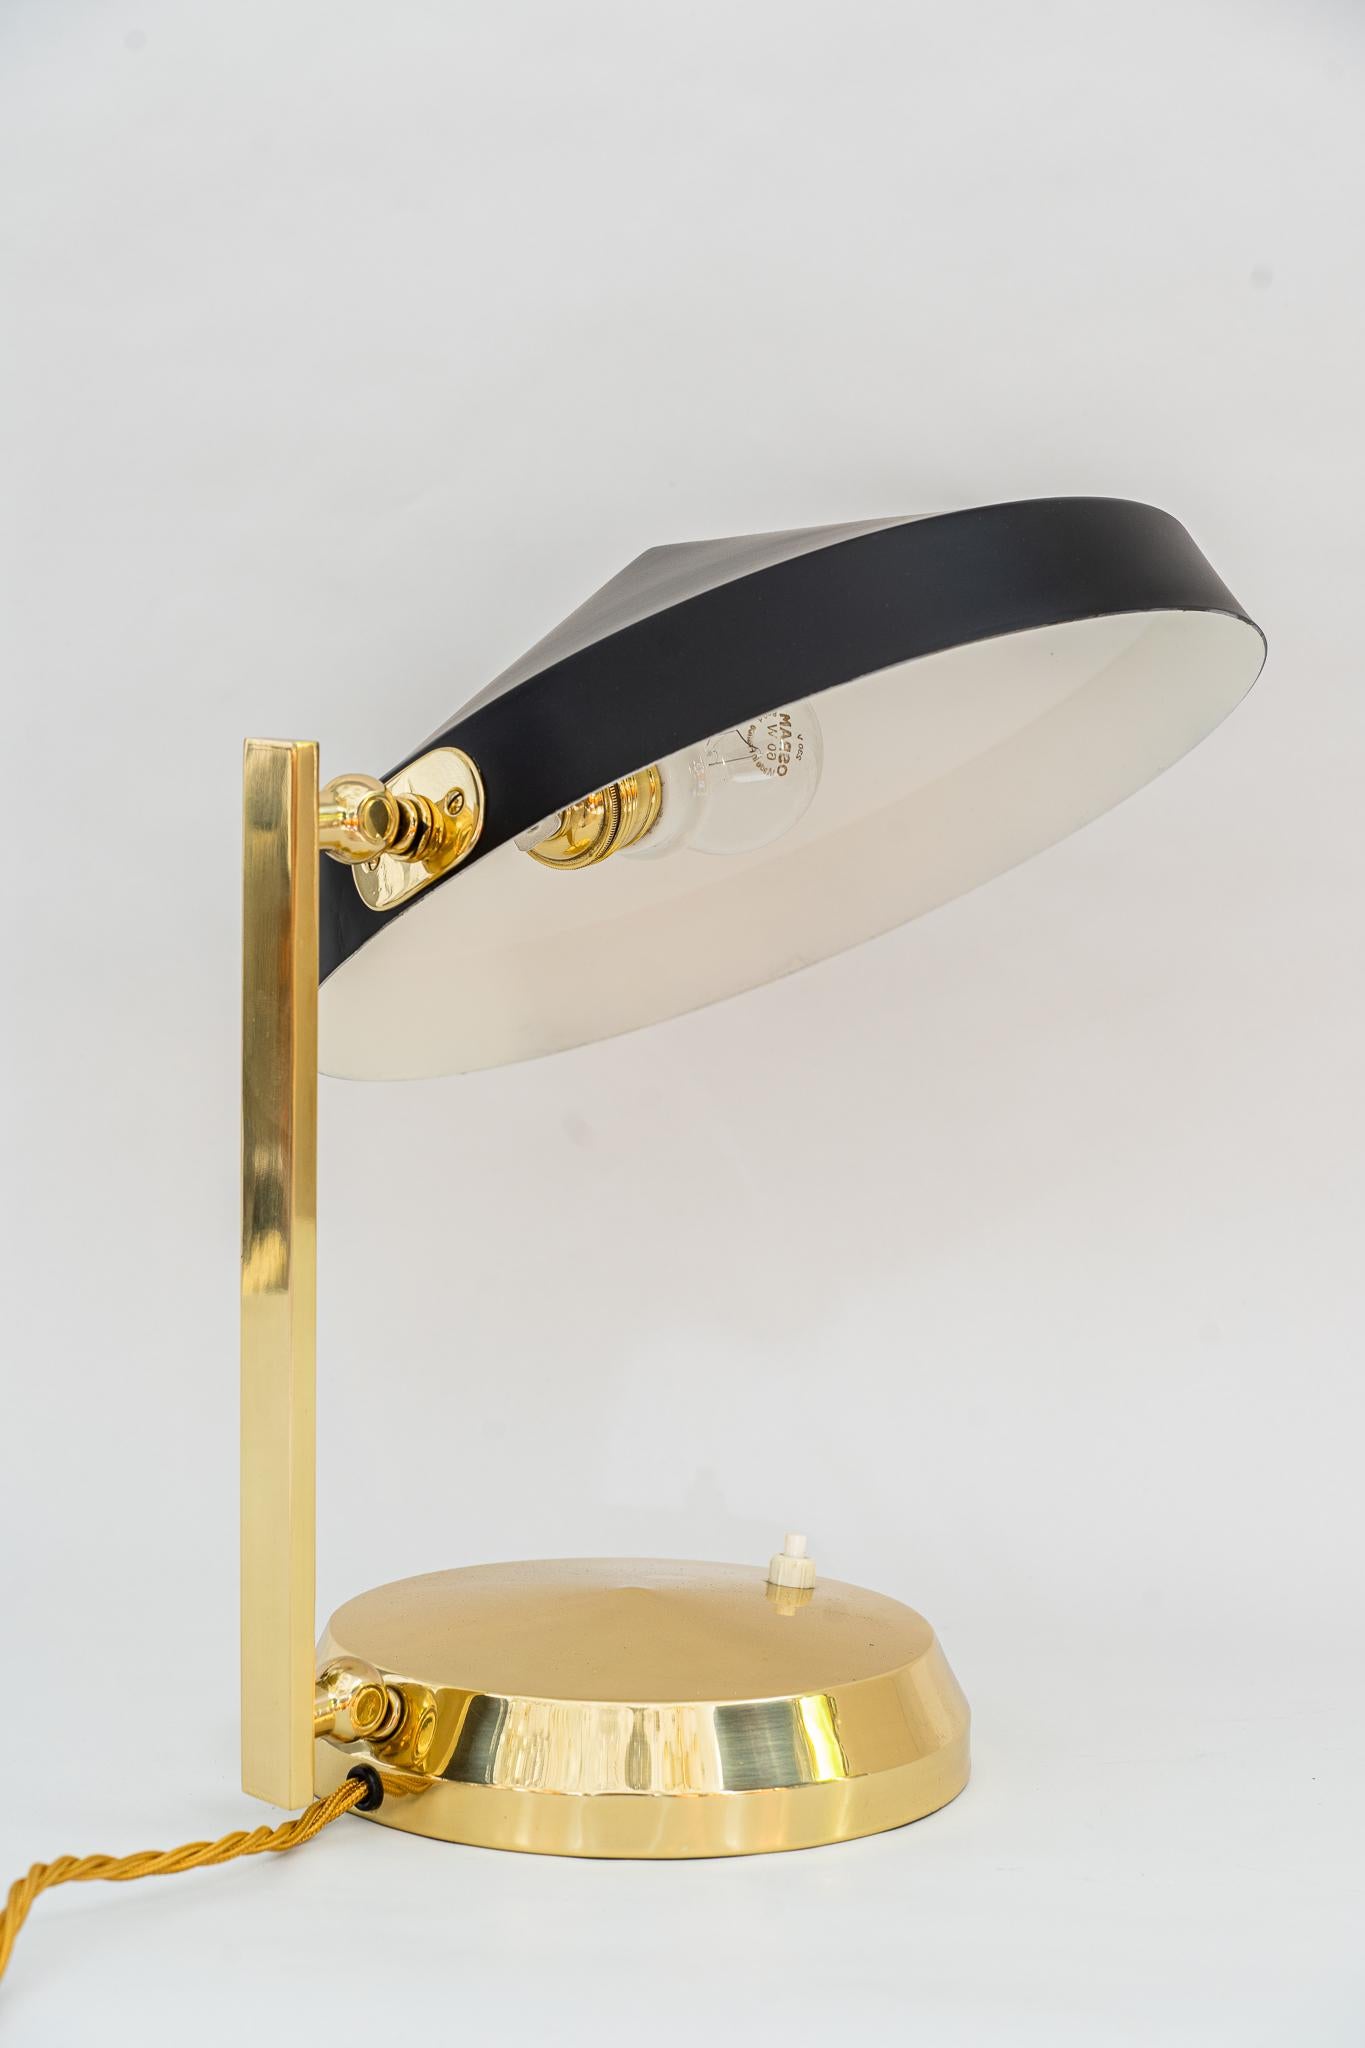 Lampe de table viennoise vers 1960
Laiton poli et émaillé au four
L'abat-jour est en aluminium (laqué noir).